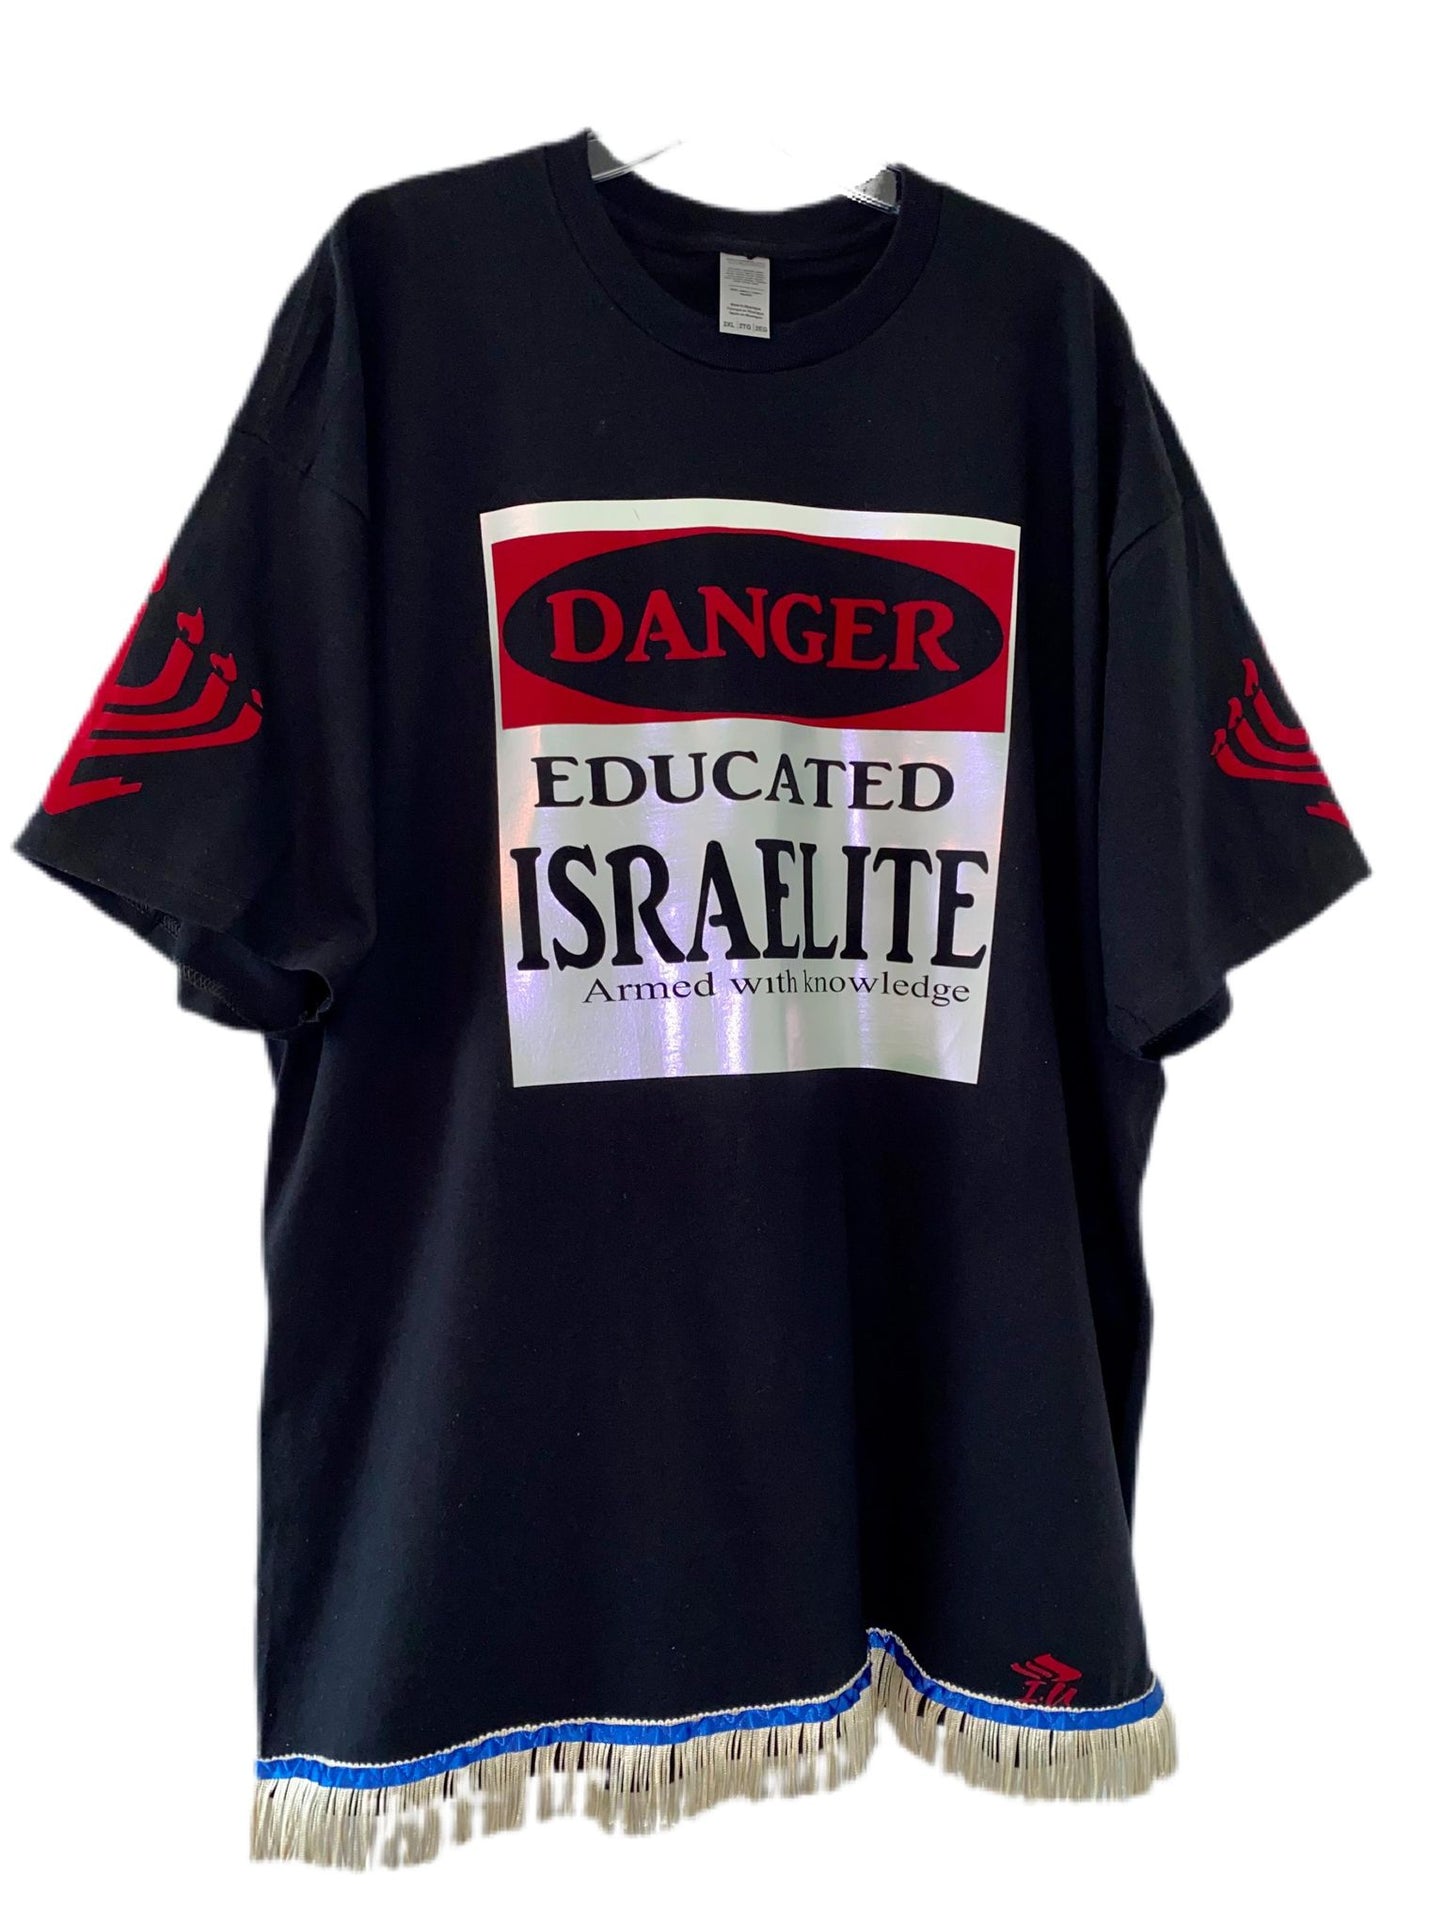 EDUCATED ISRAELITE